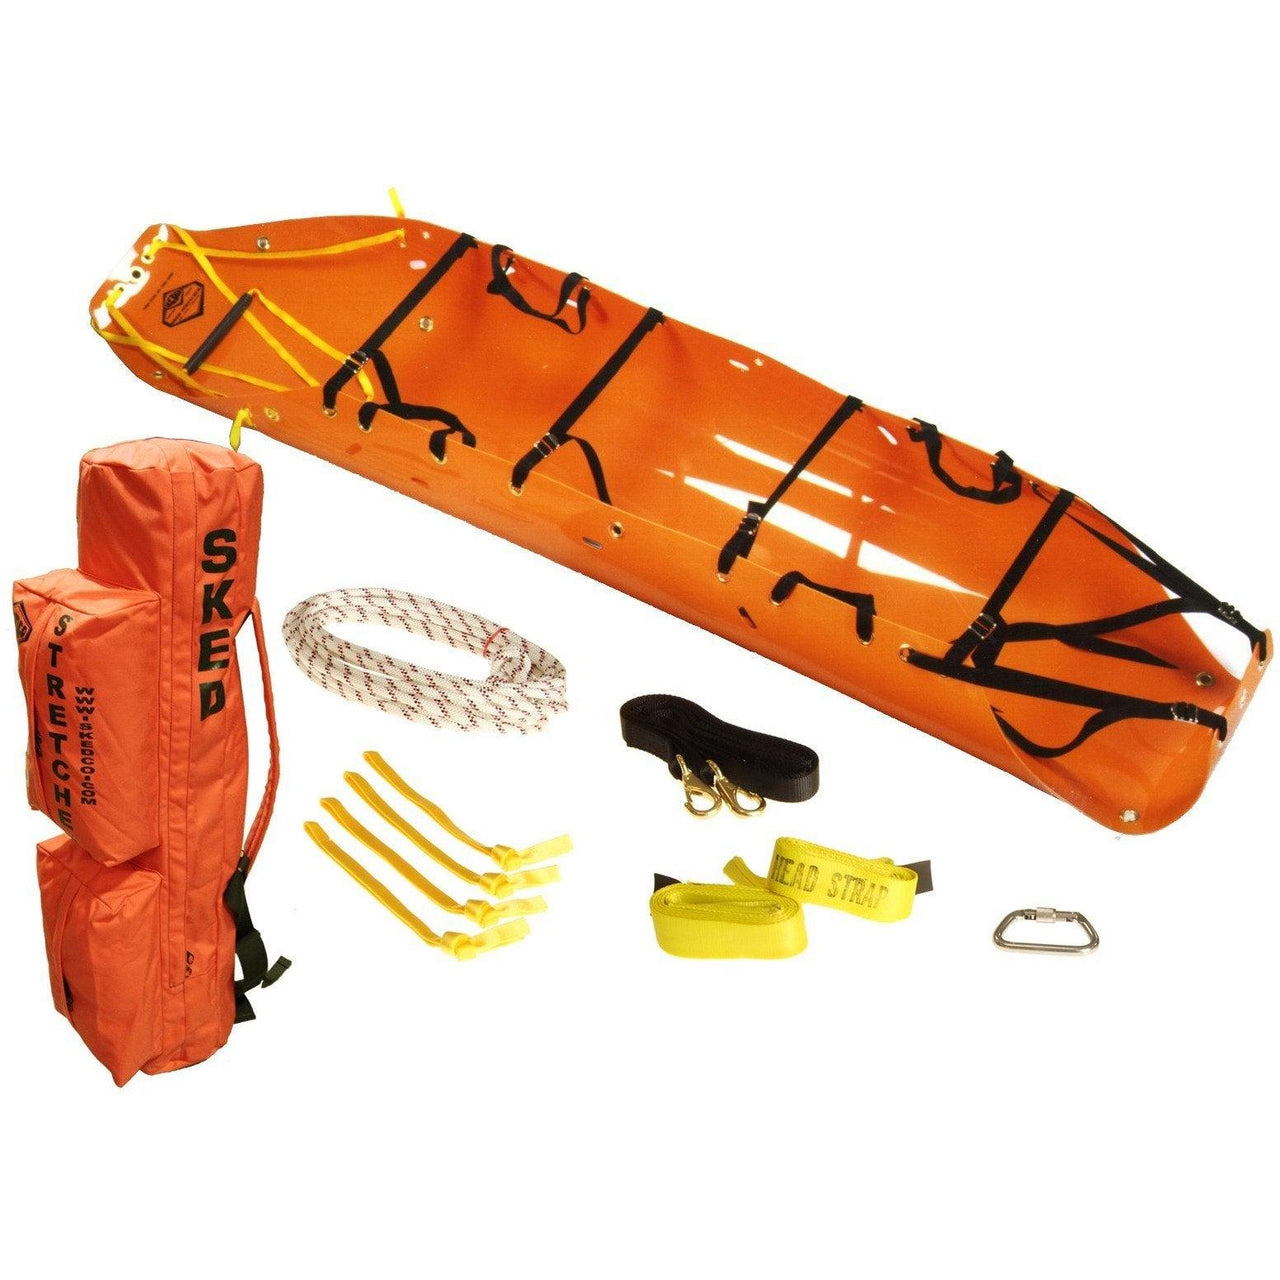 Sked® Basic Rescue System - International Orange - Vendor